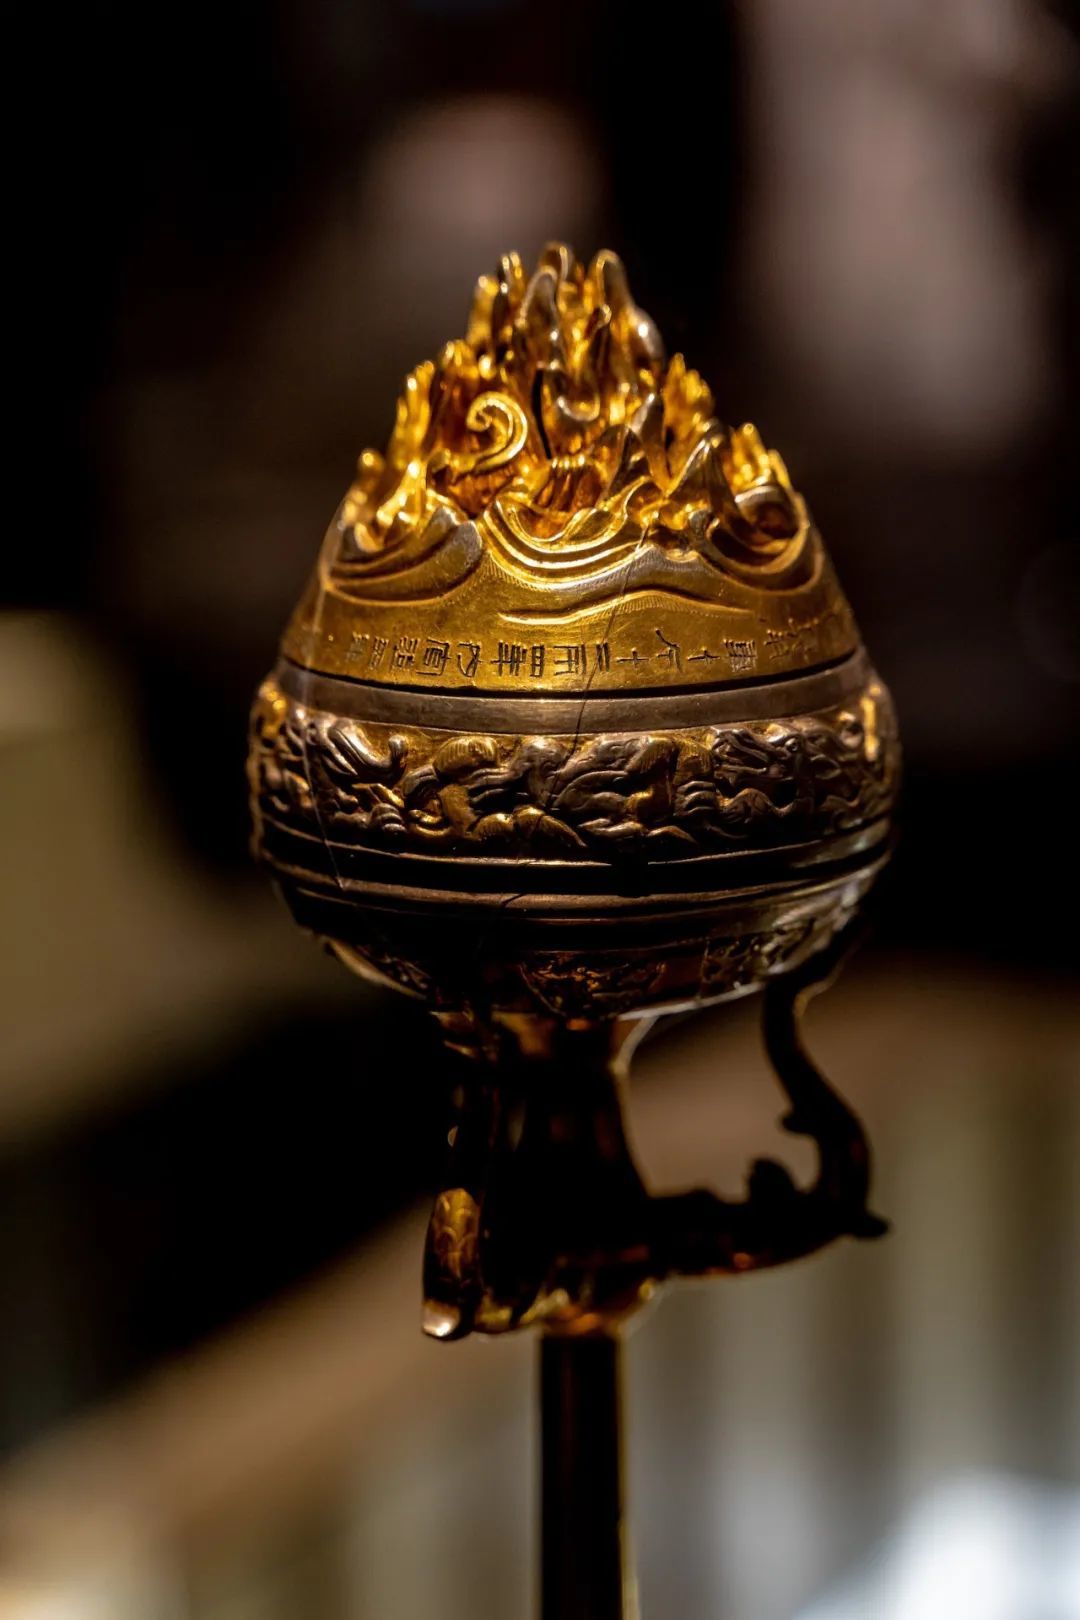 鎏金银铜竹节熏炉 陕西历史博物馆 藏 ©图虫创意